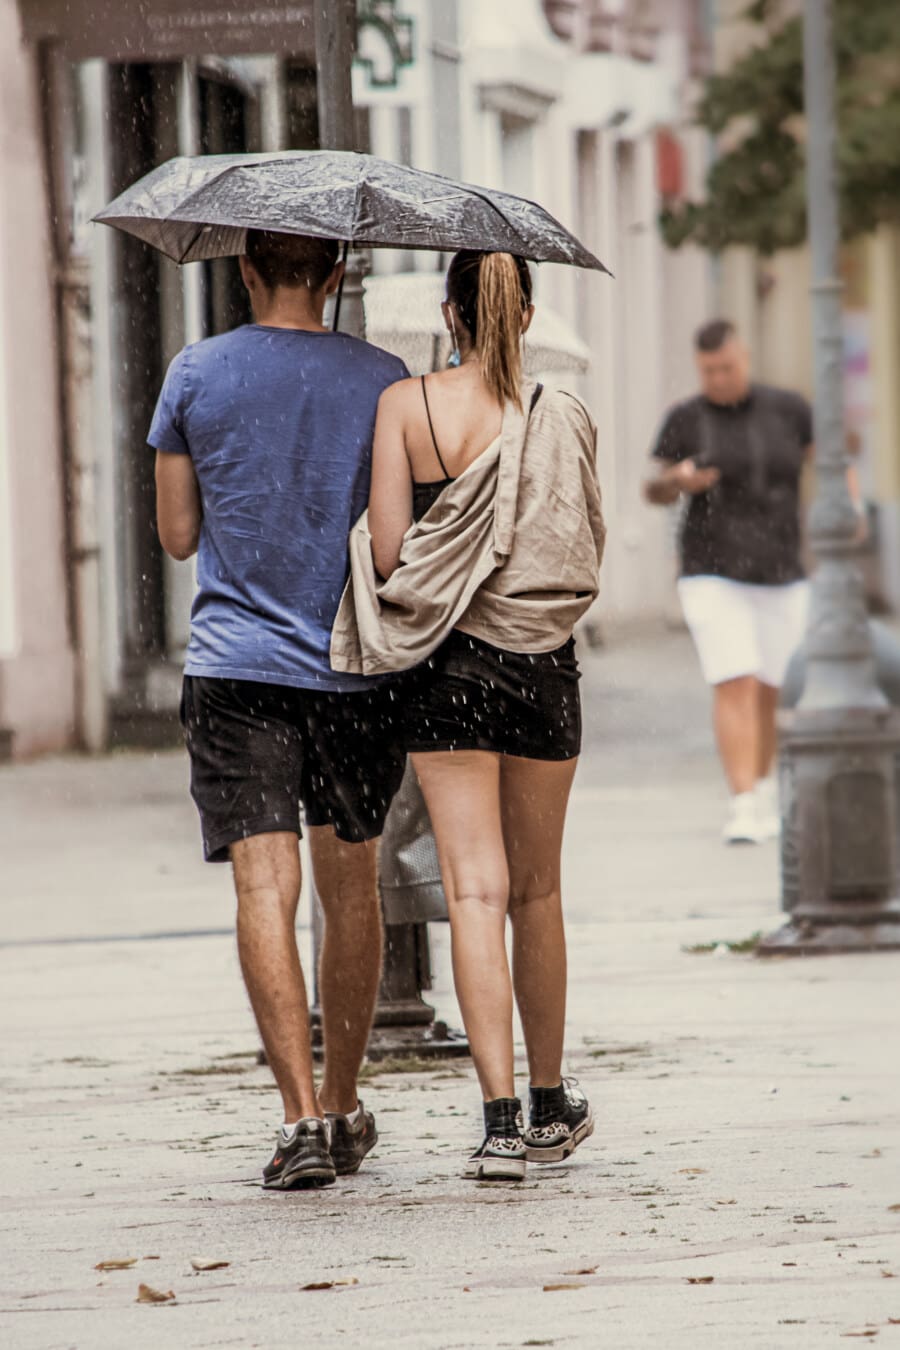 Freundin, Regen, Freund, Fuß, Regenschirm, romantische, Straße, Frau, Mädchen, Rock